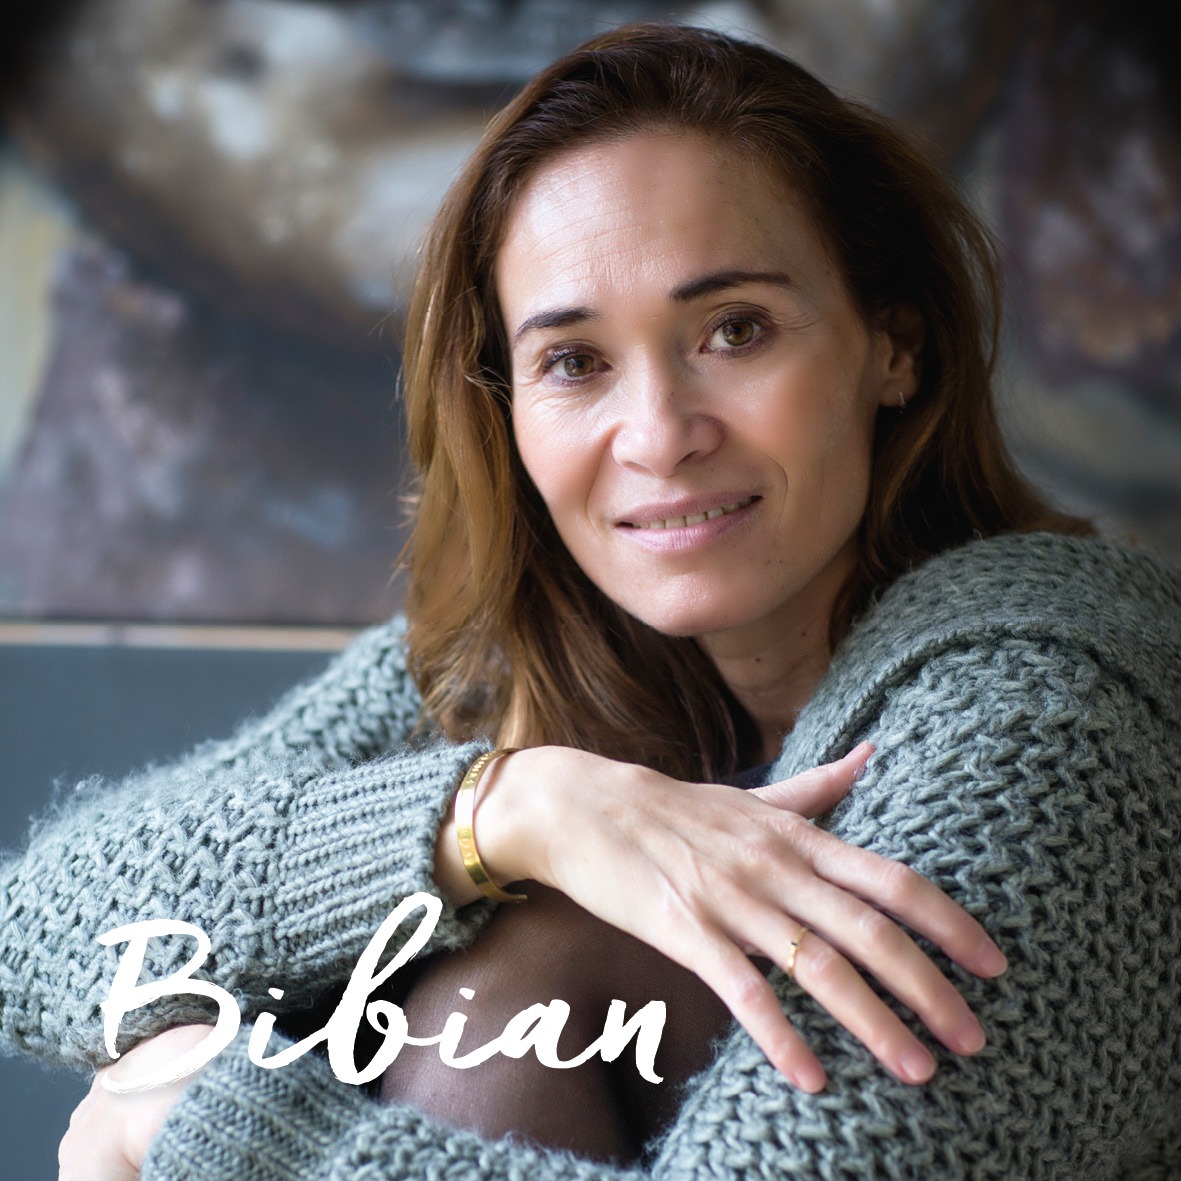 Bibian De inspirerende vrouw Bibian Mentel, hoe gaat het nu met haar? + winactie